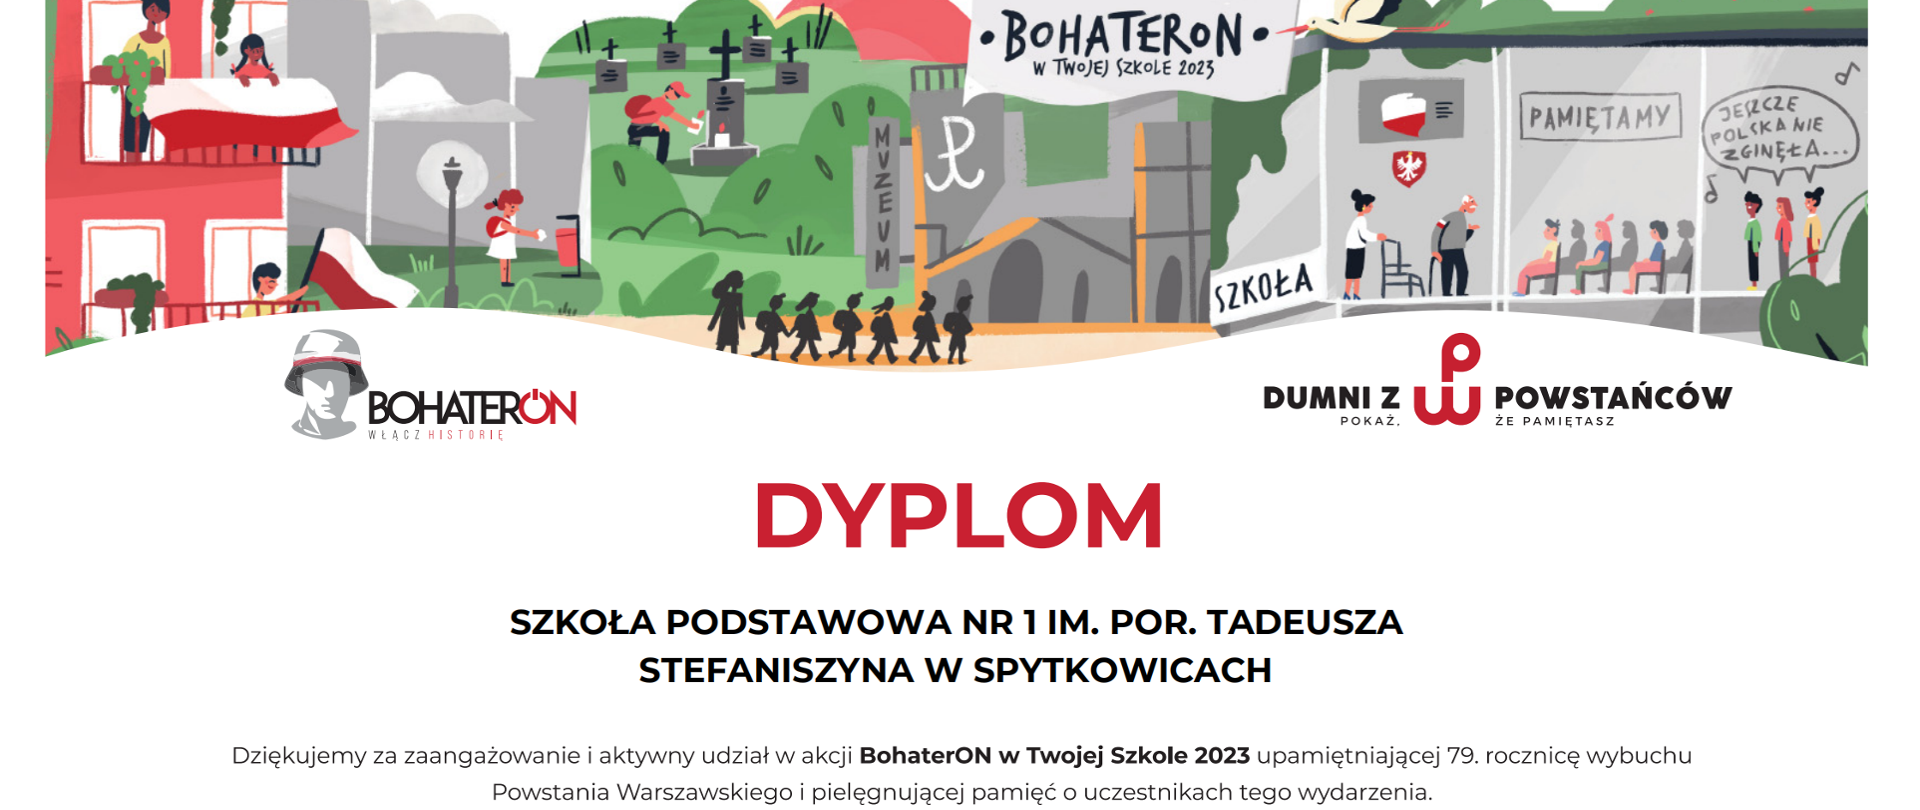 podziękowanie za udział w akcji BohaterON w Twojej Szkole 2023 realizowanej w ramach ogólnopolskiej kampanii BohaterON - włącz historię! 